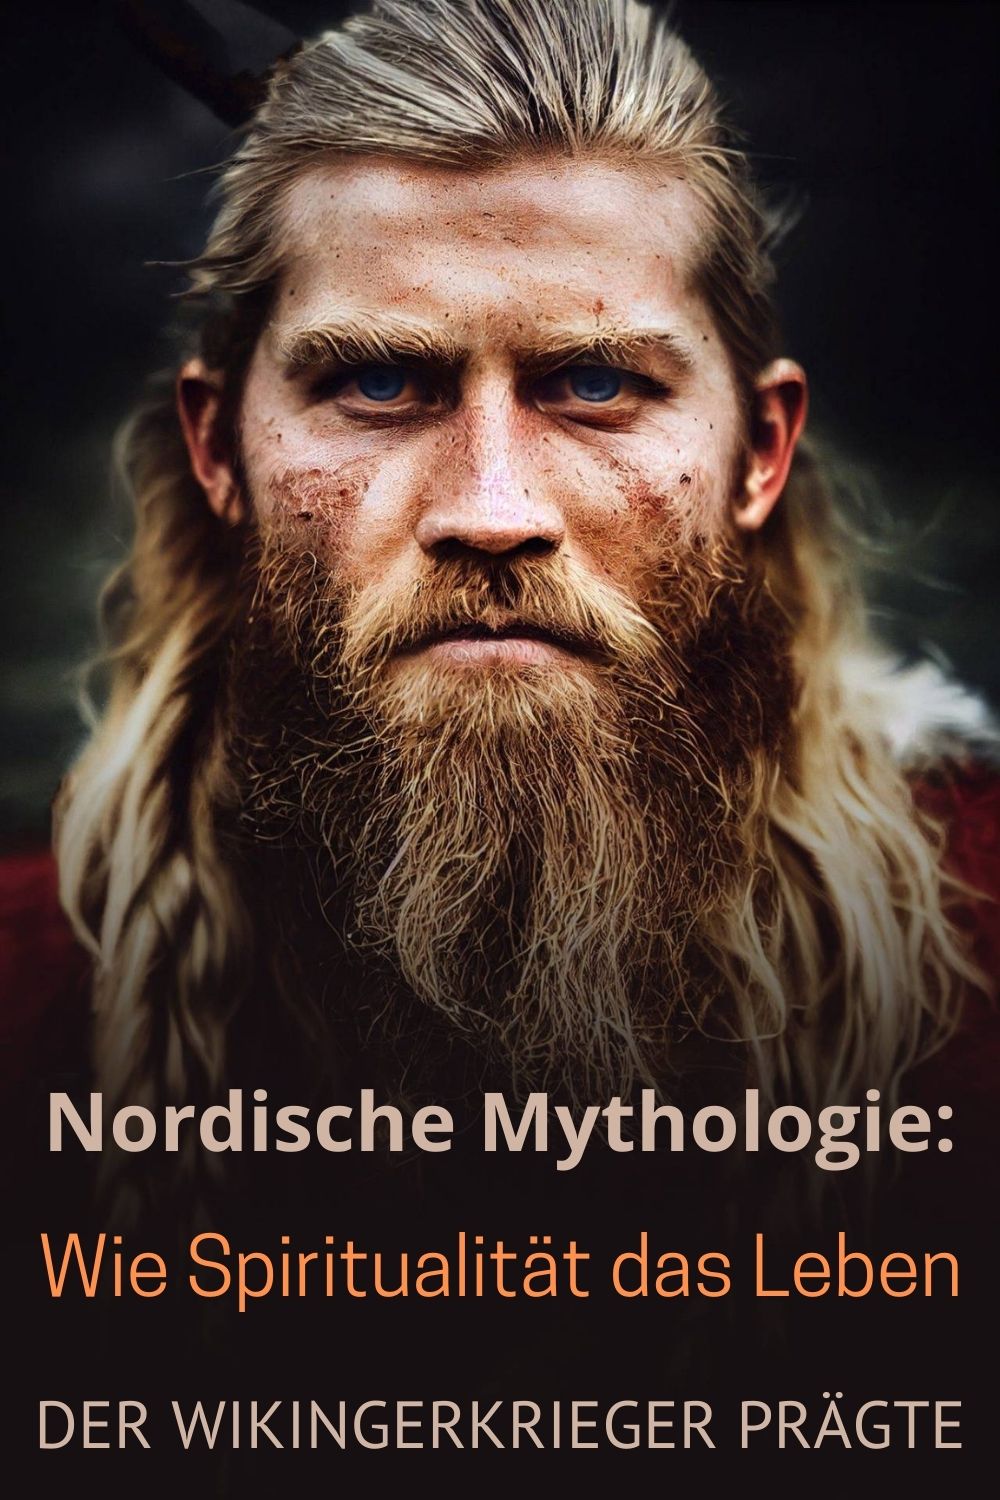 Nordische-Mythologie-Wie-Spiritualitaet-das-Leben-der-Wikingerkrieger-praegte